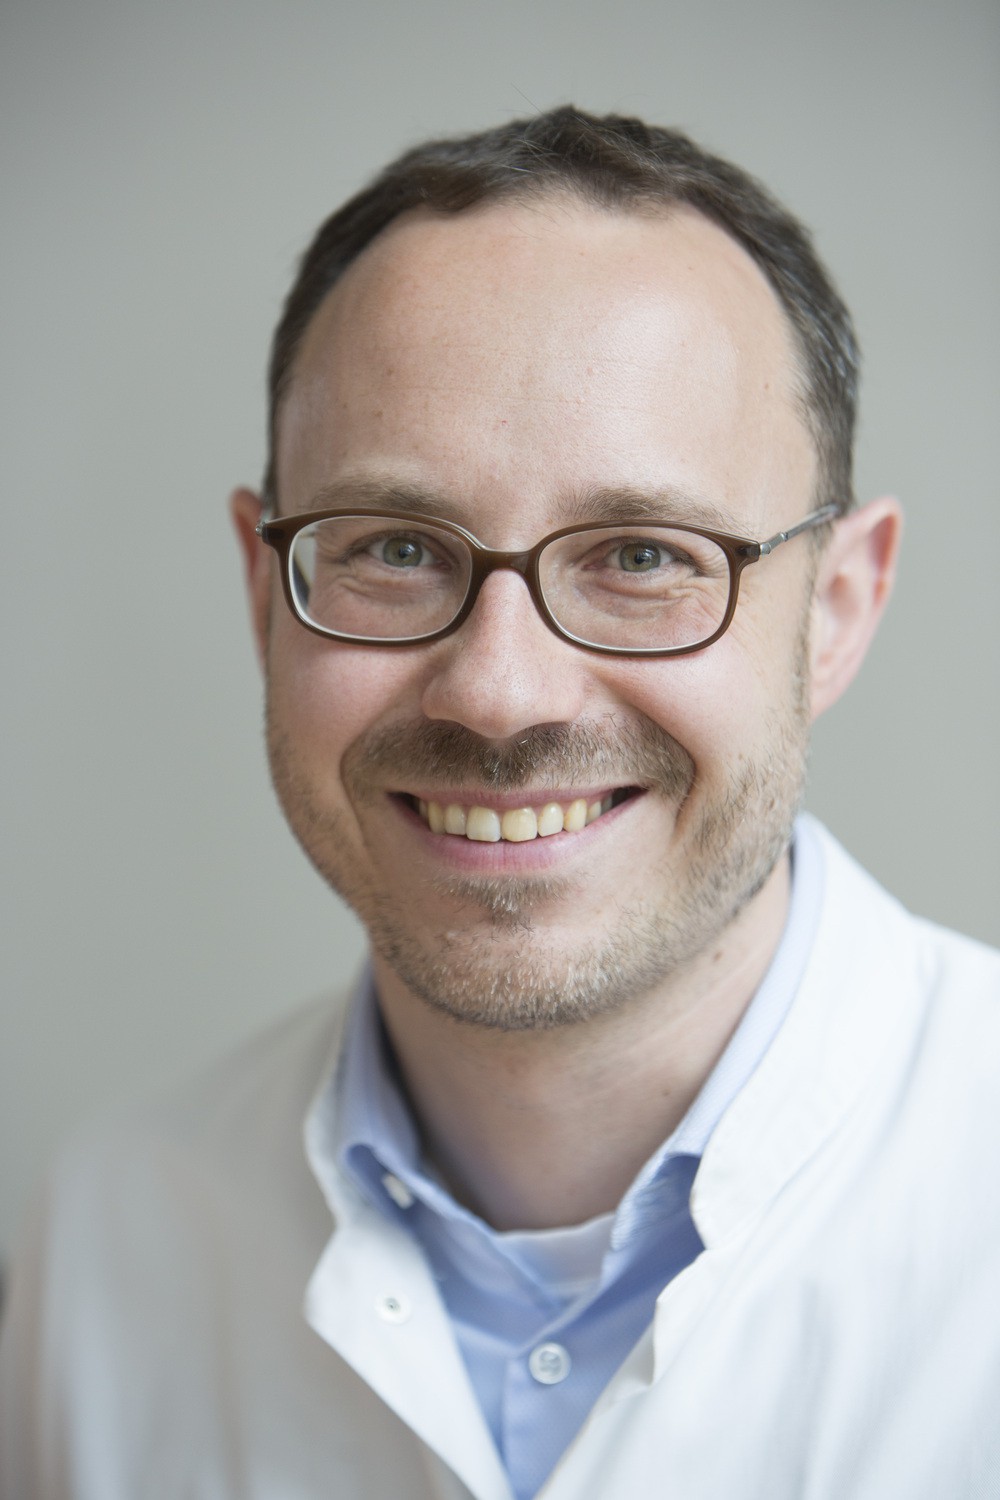 Prof. Dr. med.dent. Sebastian Hahnel leitet die Poliklinik für Zahnärztliche Prothetik und Werkstoffkunde am Universitätsklinikum Leipzig.